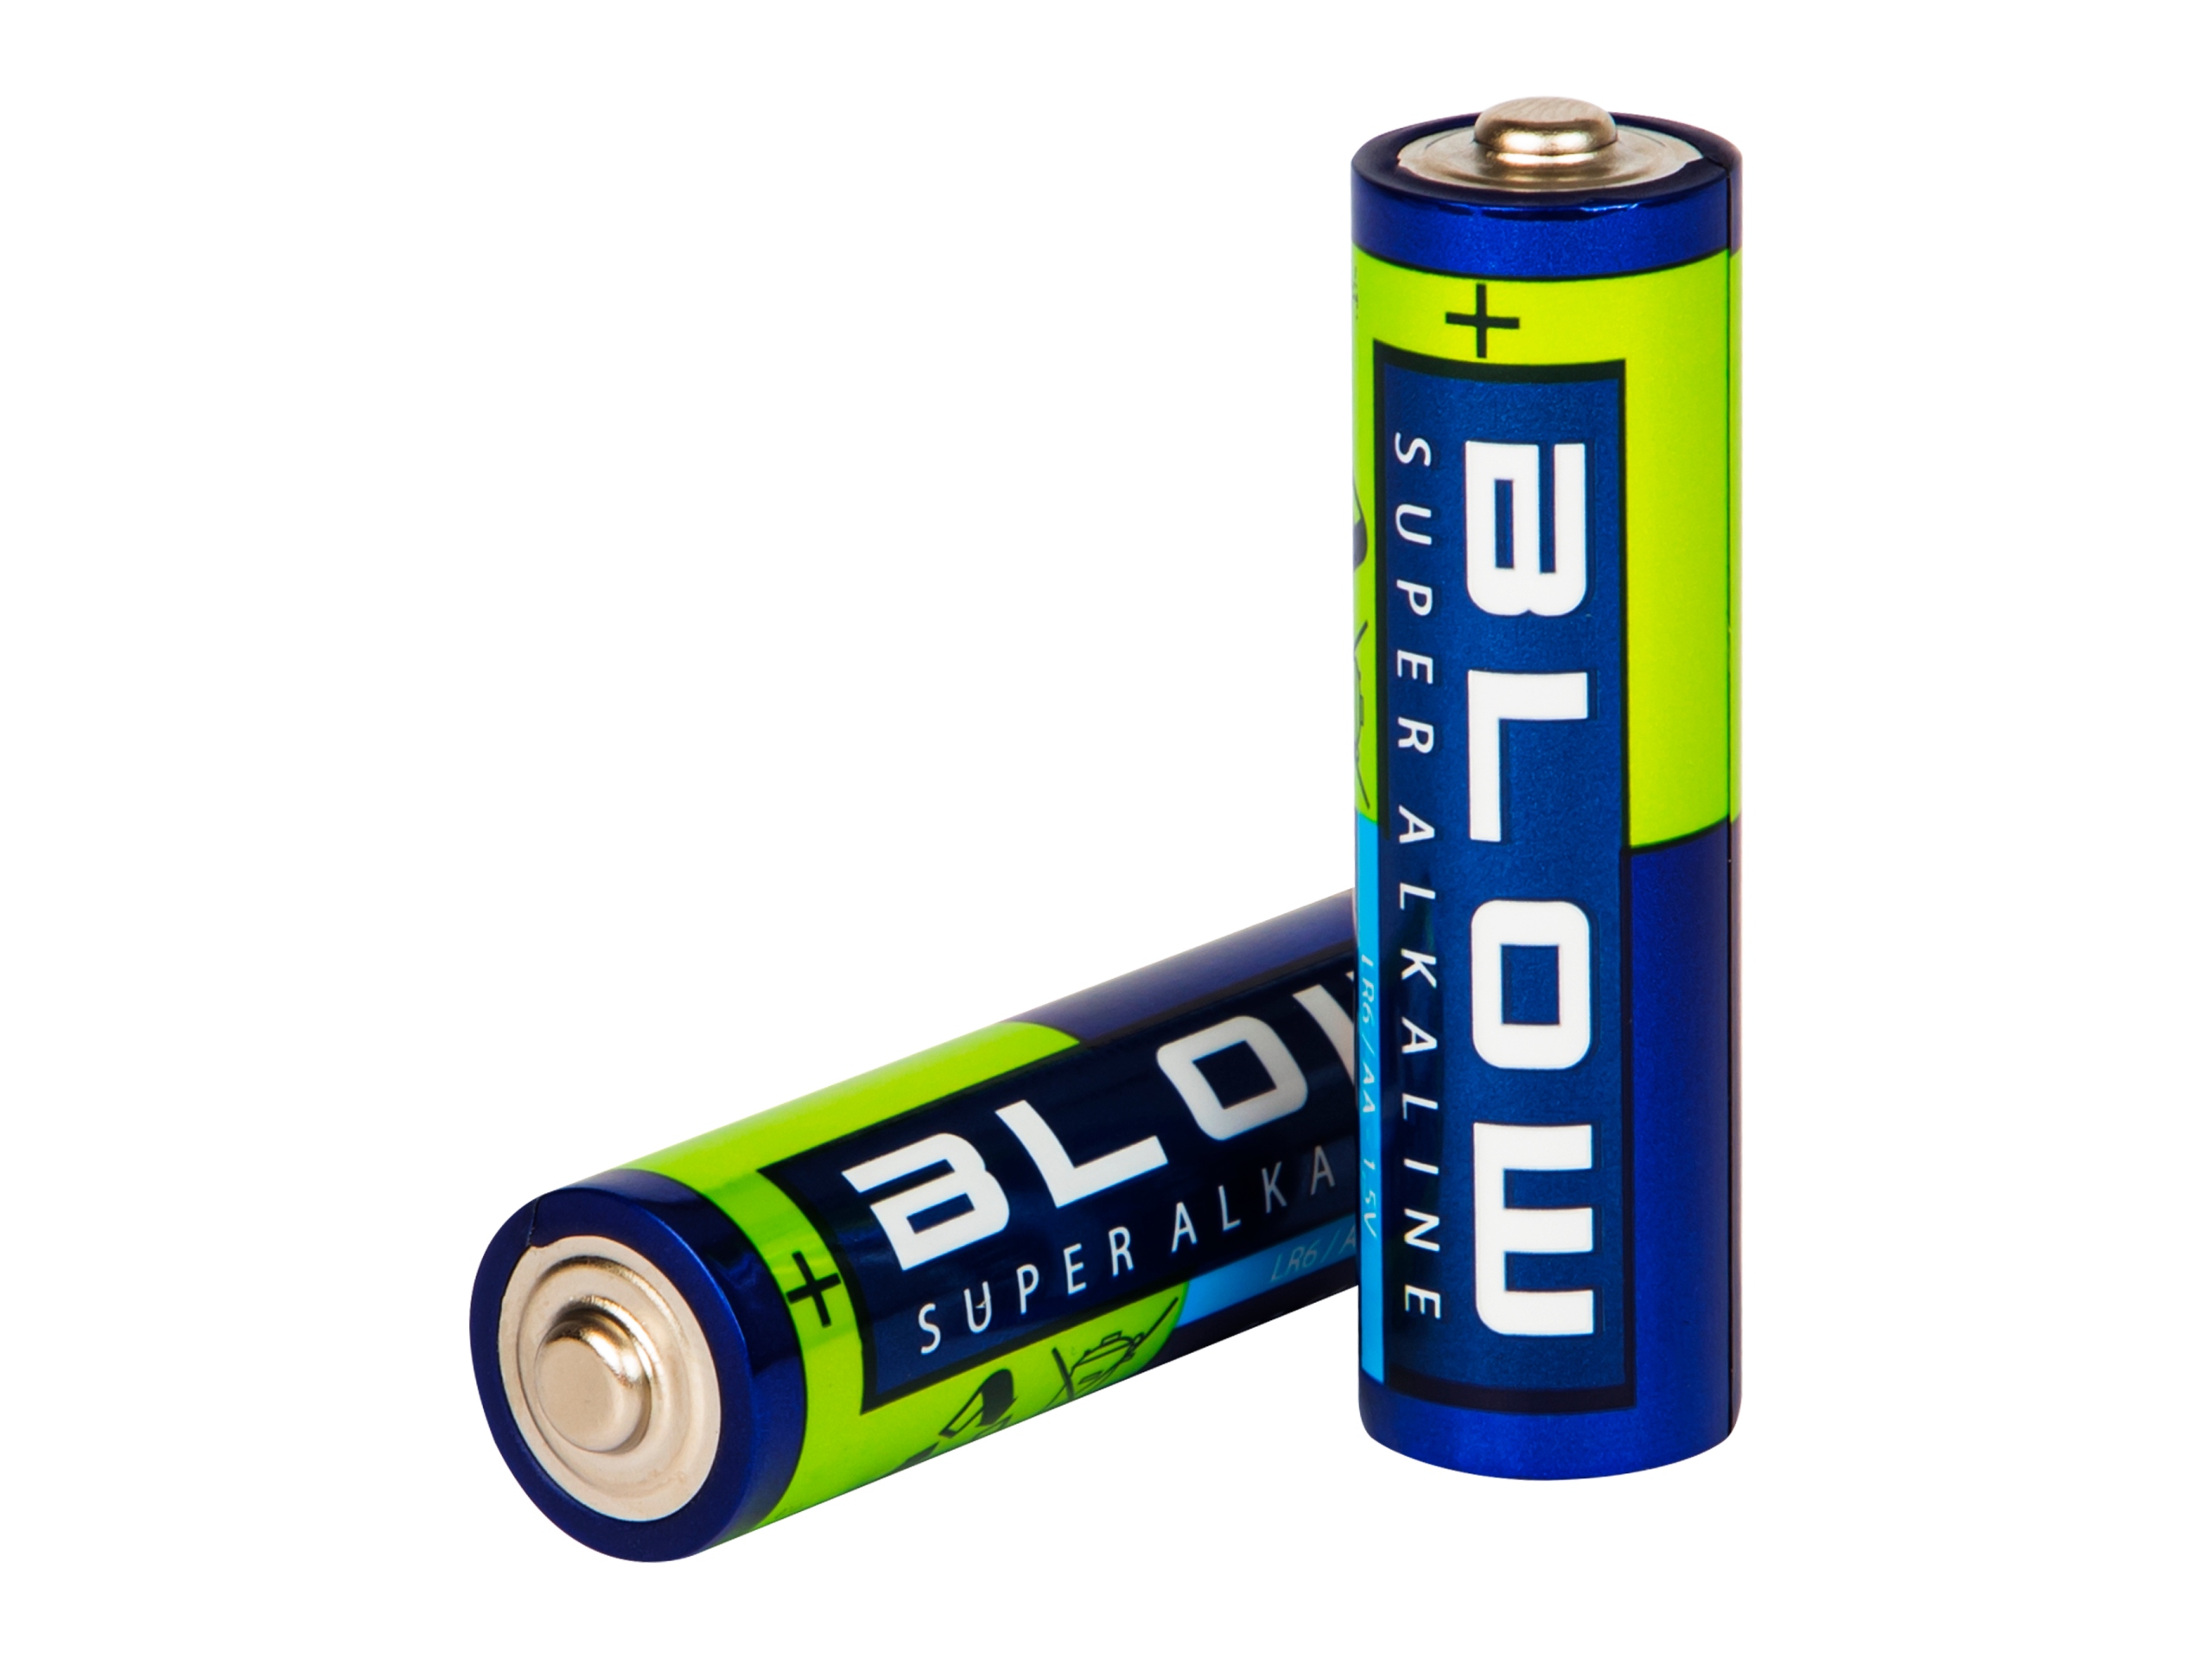 BLOW supersārma AA LR6 baterijas 10x Blow zīmola pirkstus